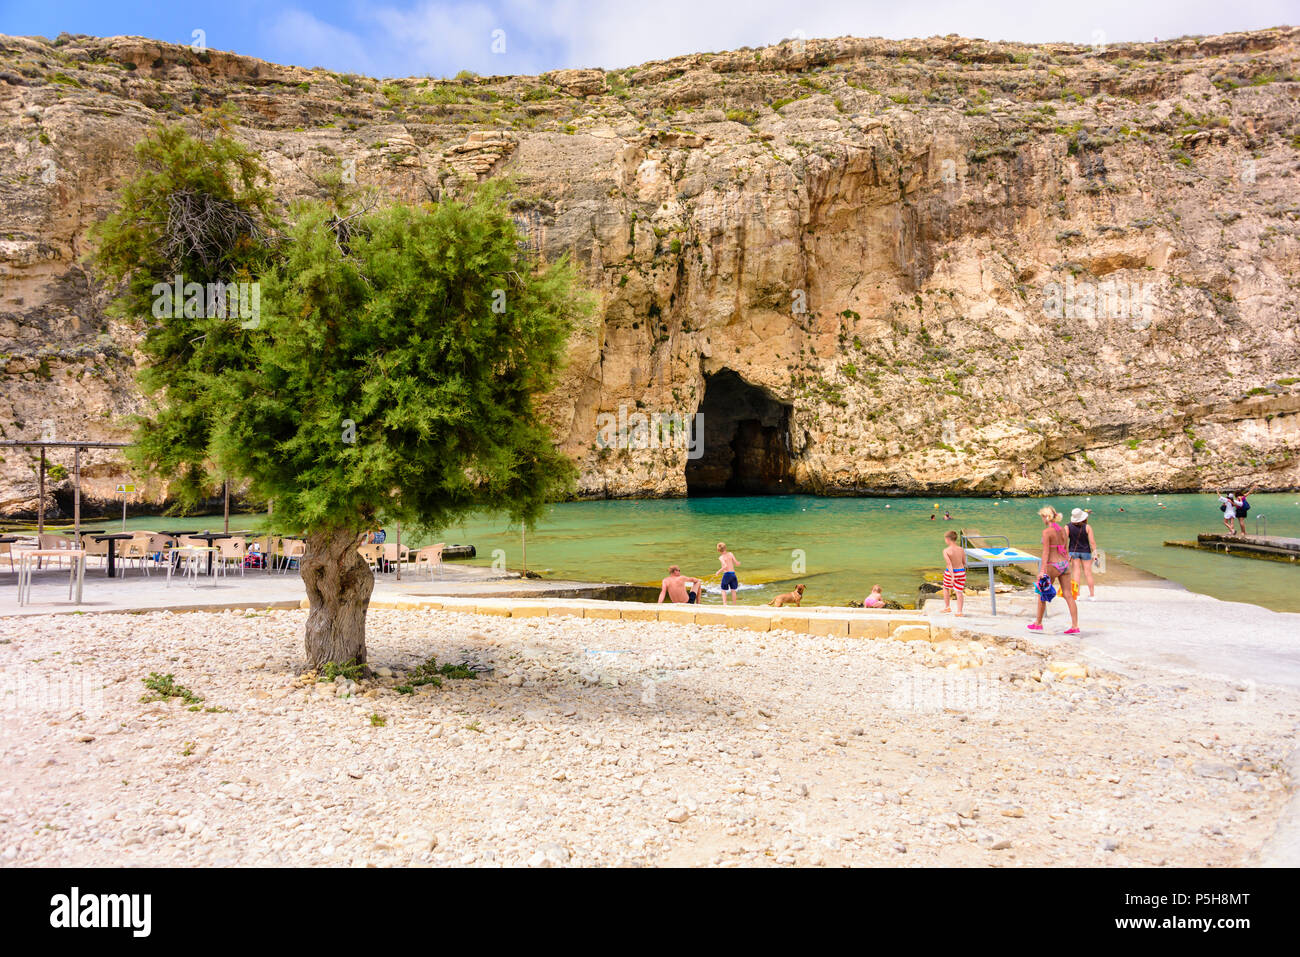 La mer intérieure, Dwerja, Gozo, Malte. La grotte se joint à la mer Méditerranée de l'autre côté de la falaise. Banque D'Images